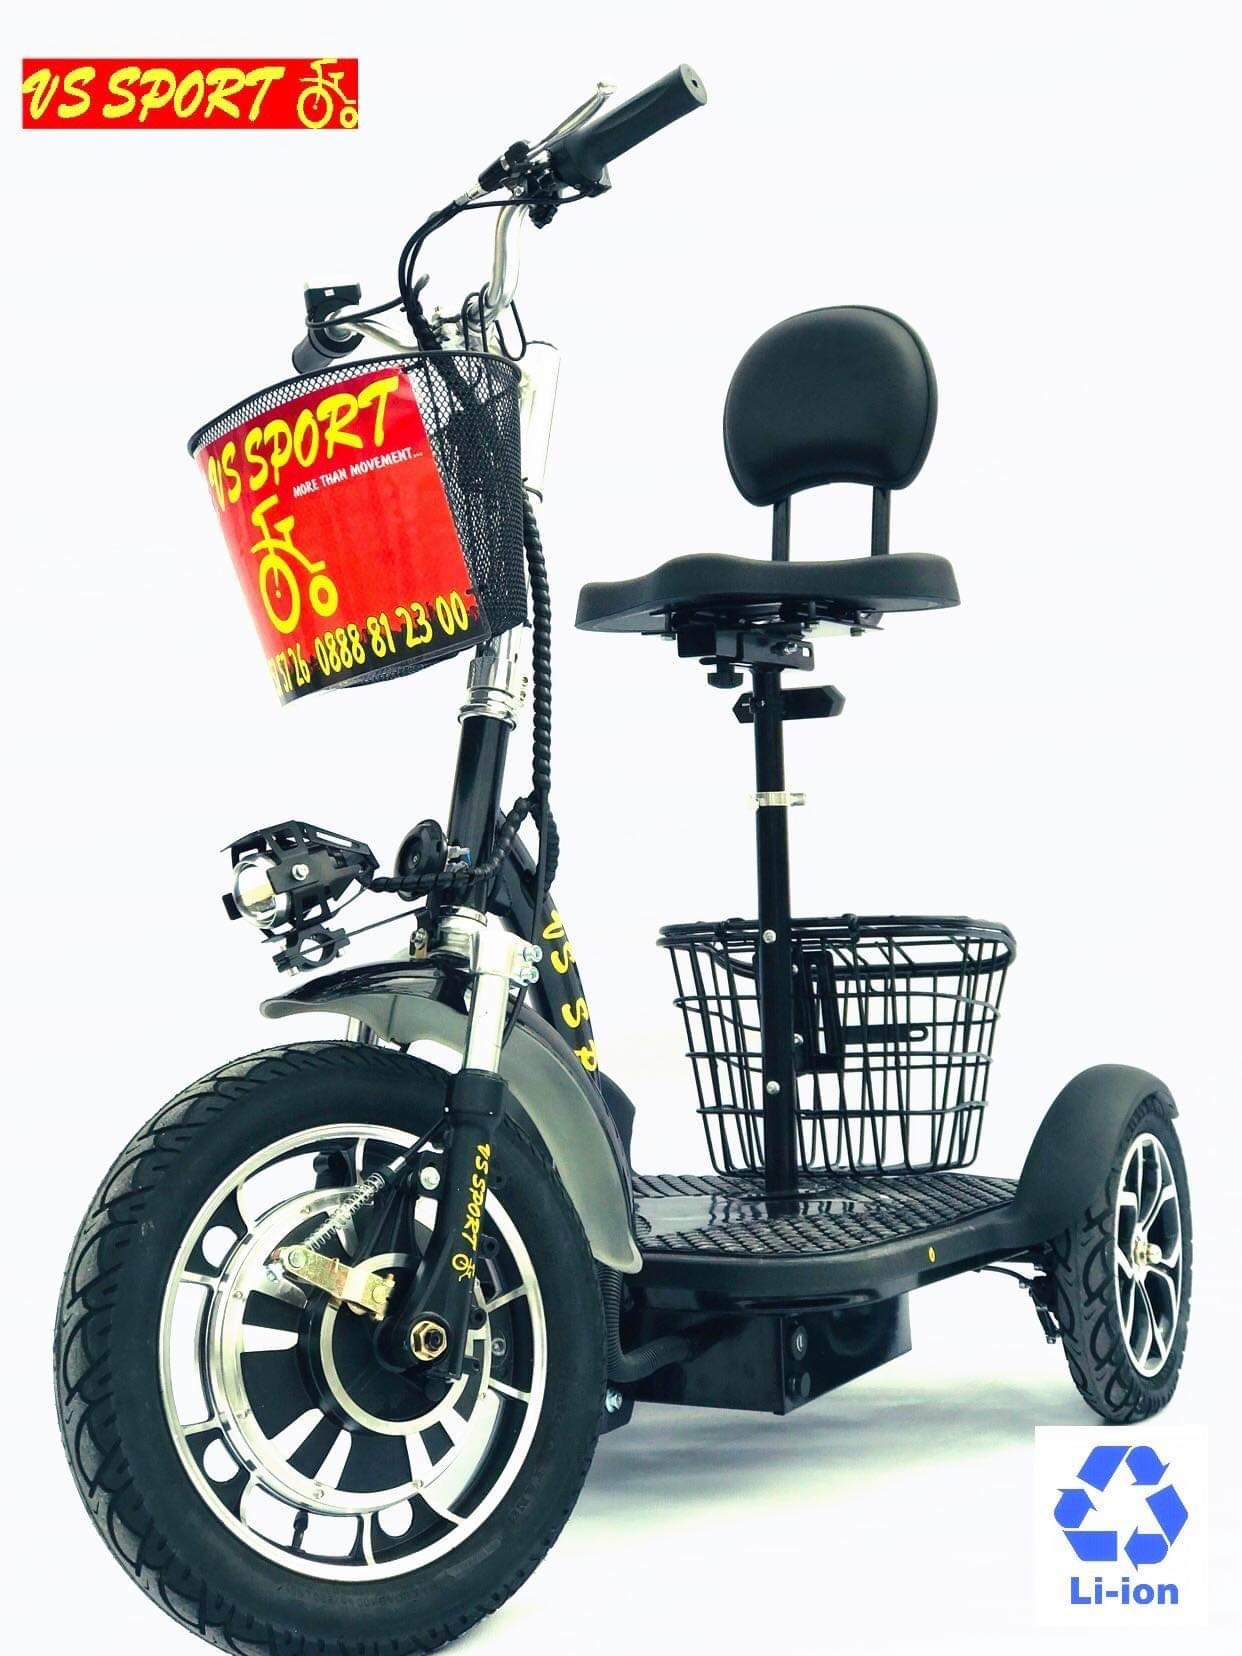 Електрически скутер VS 350 • Скутер ВС Спорт • Скутер с три колела